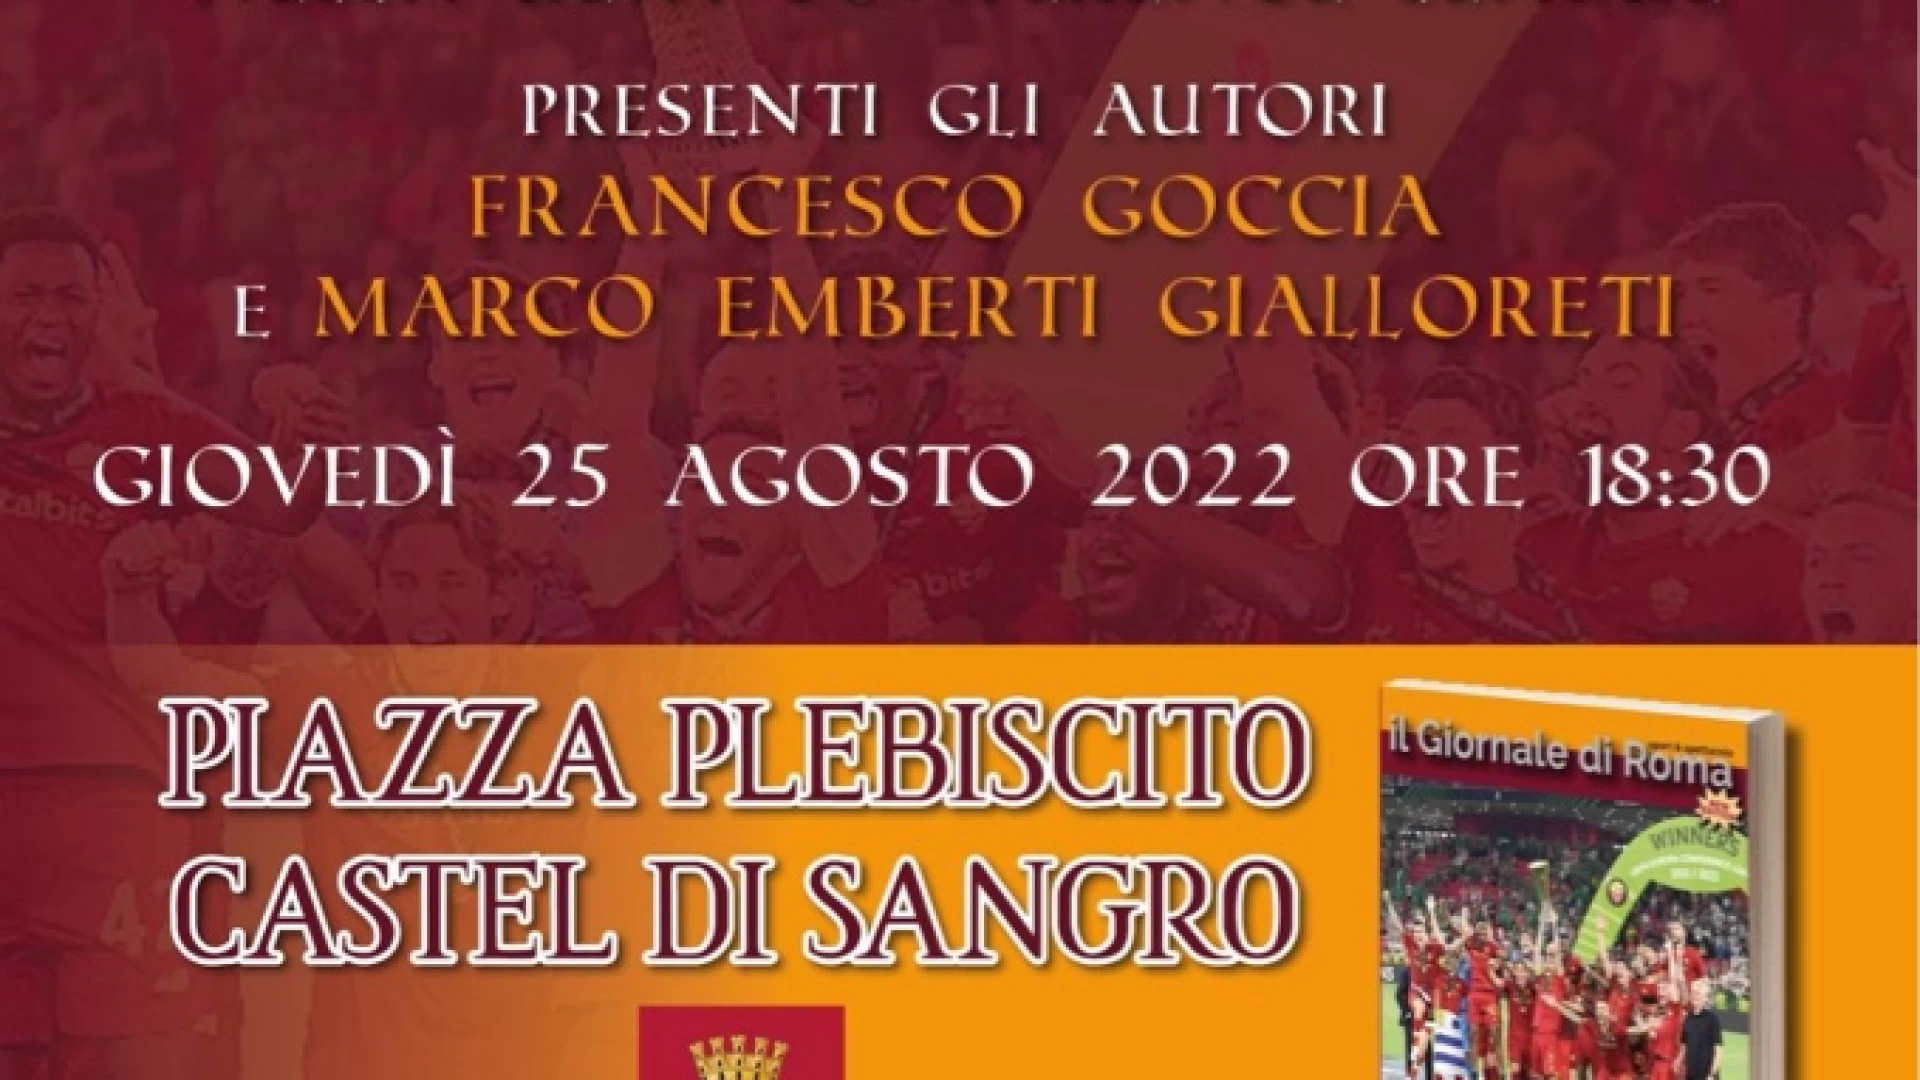 Castel Di Sangro: in piazza Plebiscito domani la presentazione del libro "Speciale Conference League" di Francesco Goccia e Marco Emberti Gialloreti.